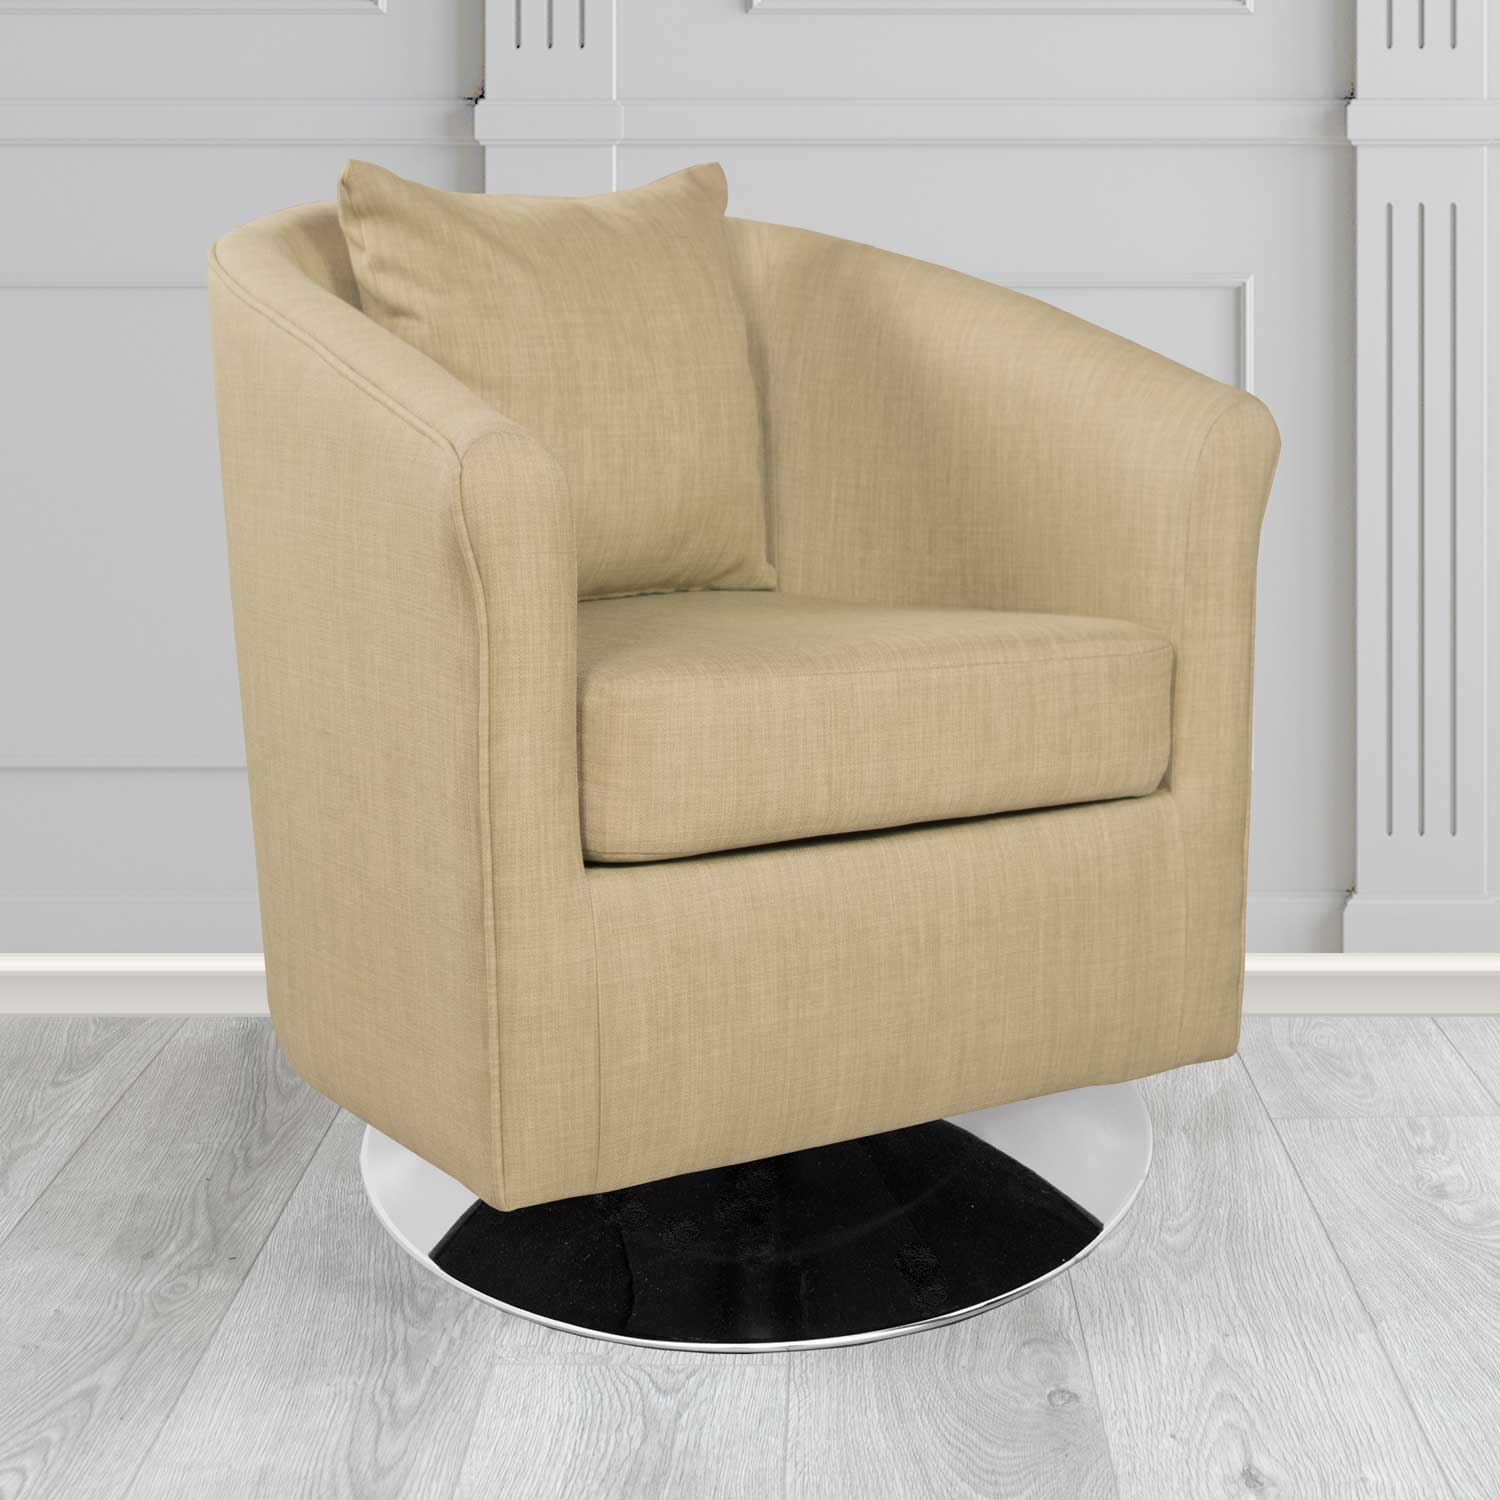 St Tropez Charles Mink Plain Linen Fabric Swivel Tub Chair - The Tub Chair Shop